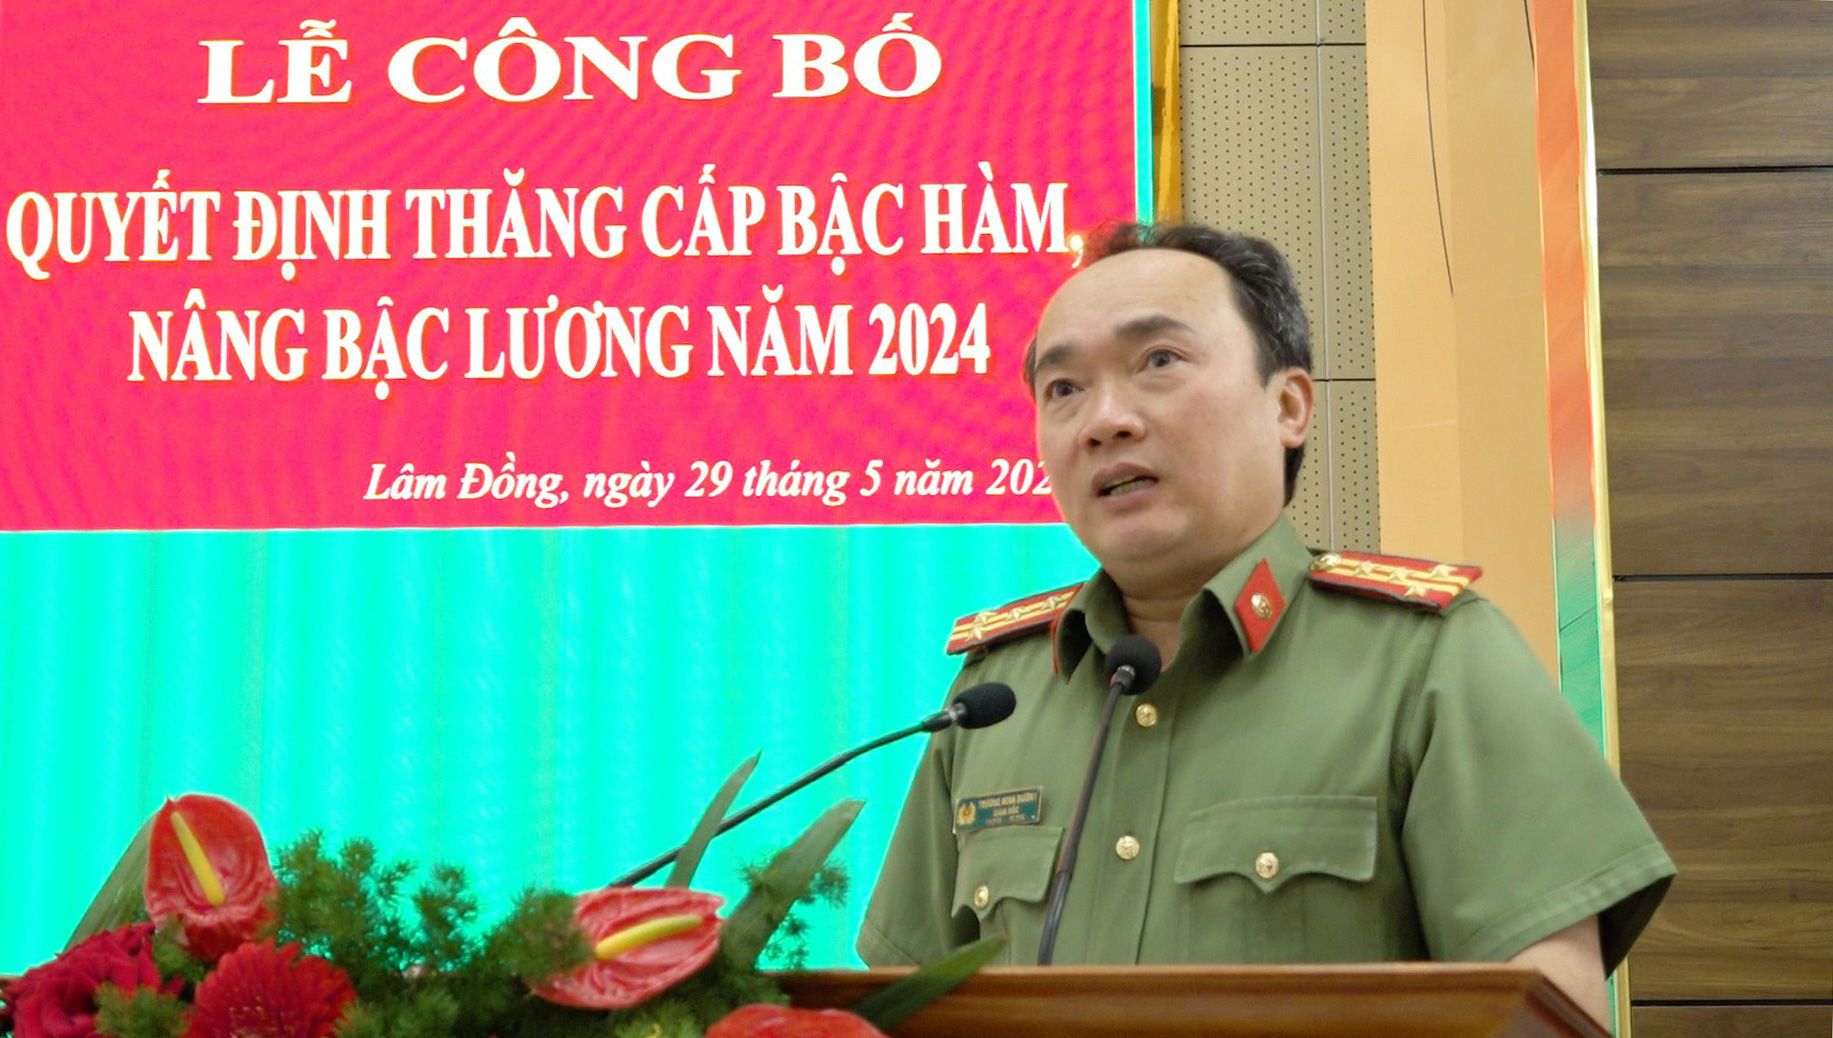 Đại tá Trương Minh Đương - Giám đốc Công an tỉnh phát biểu tại buổi lễ